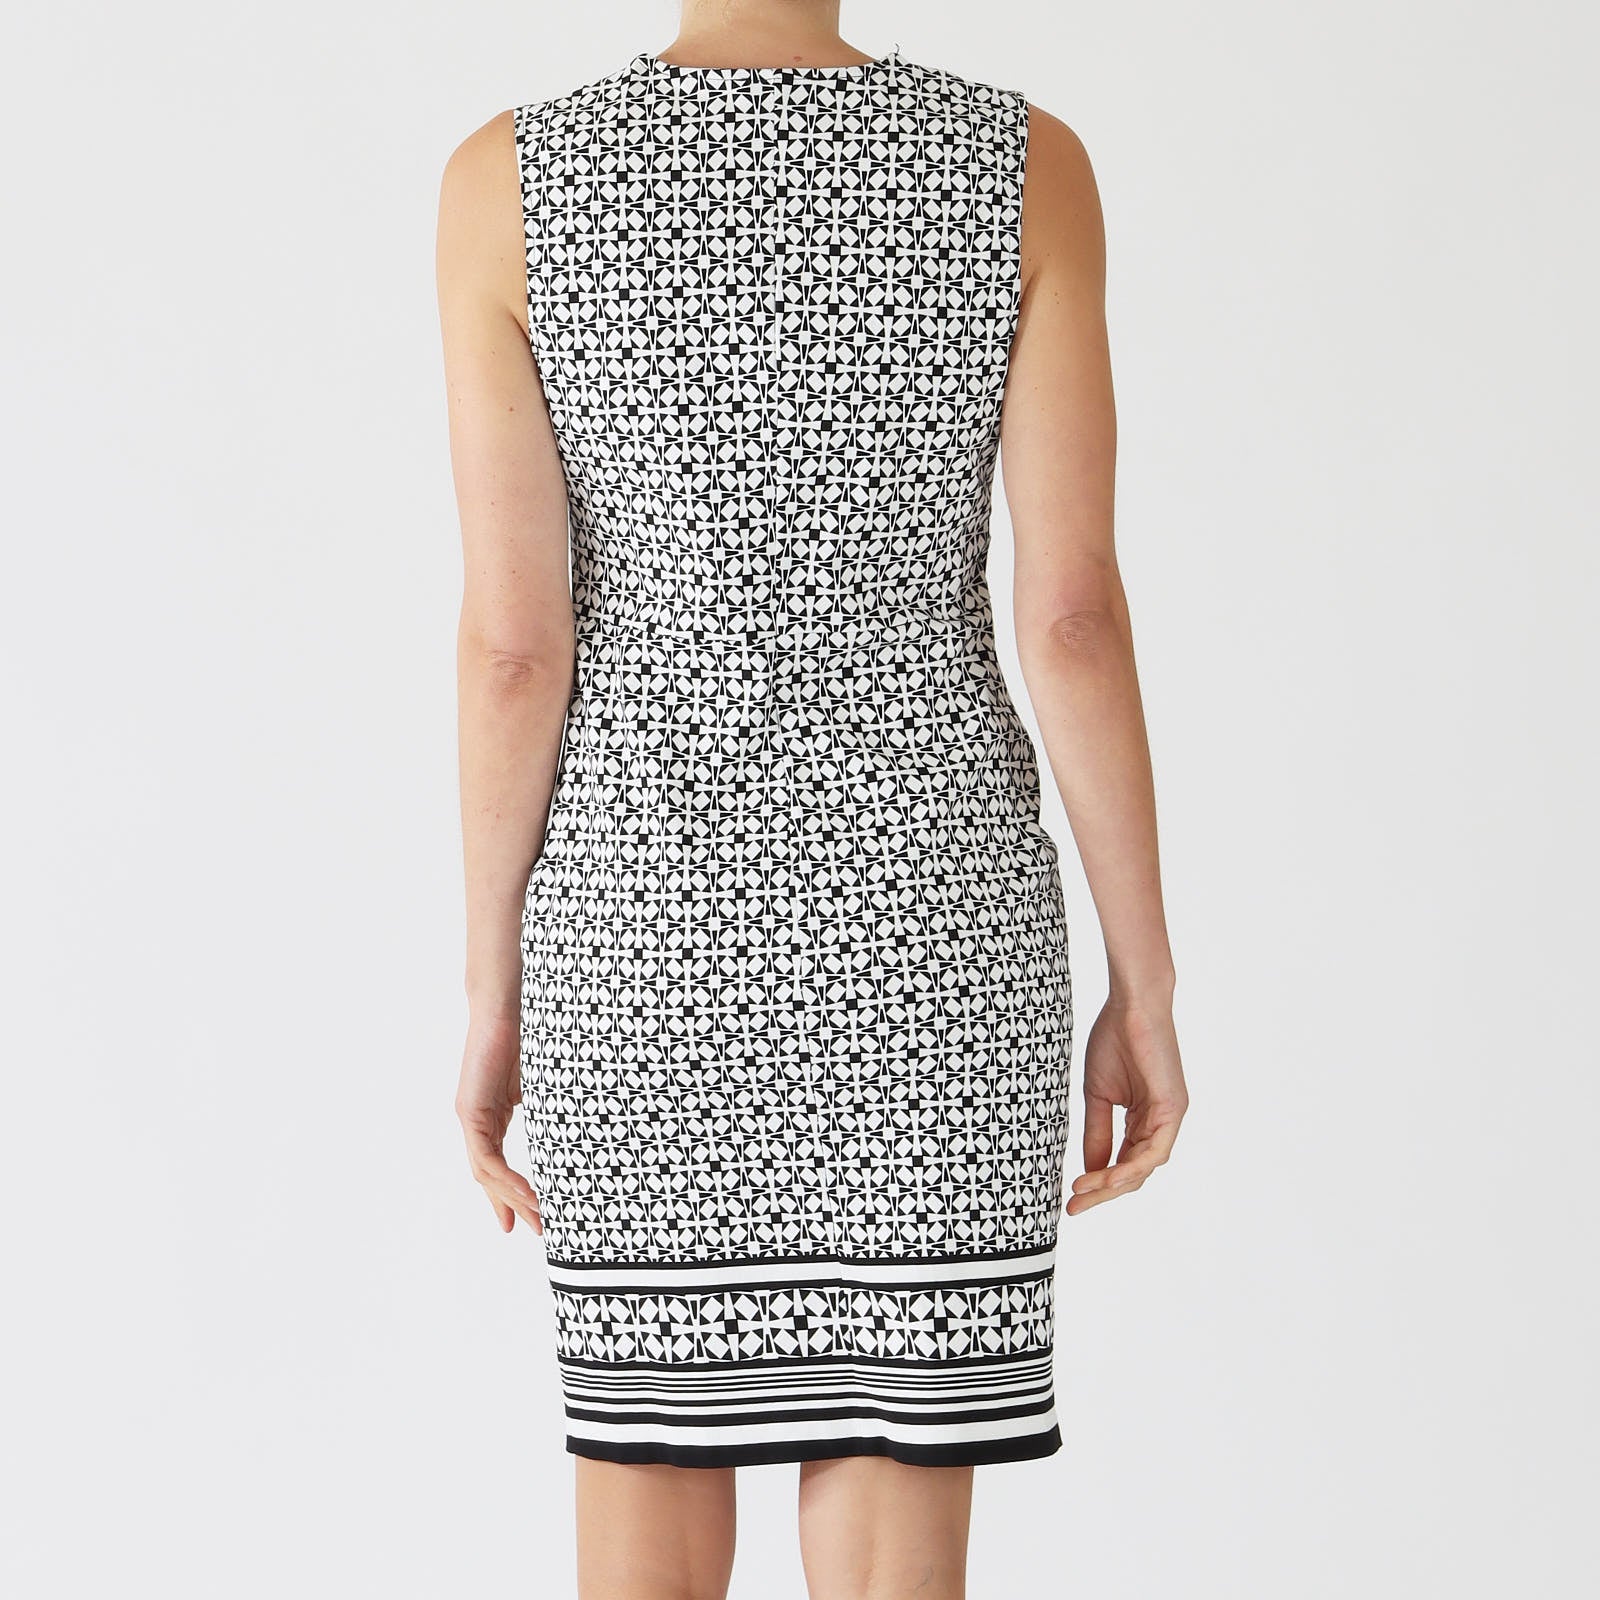 Vanilla & Black Geometric Print Dress